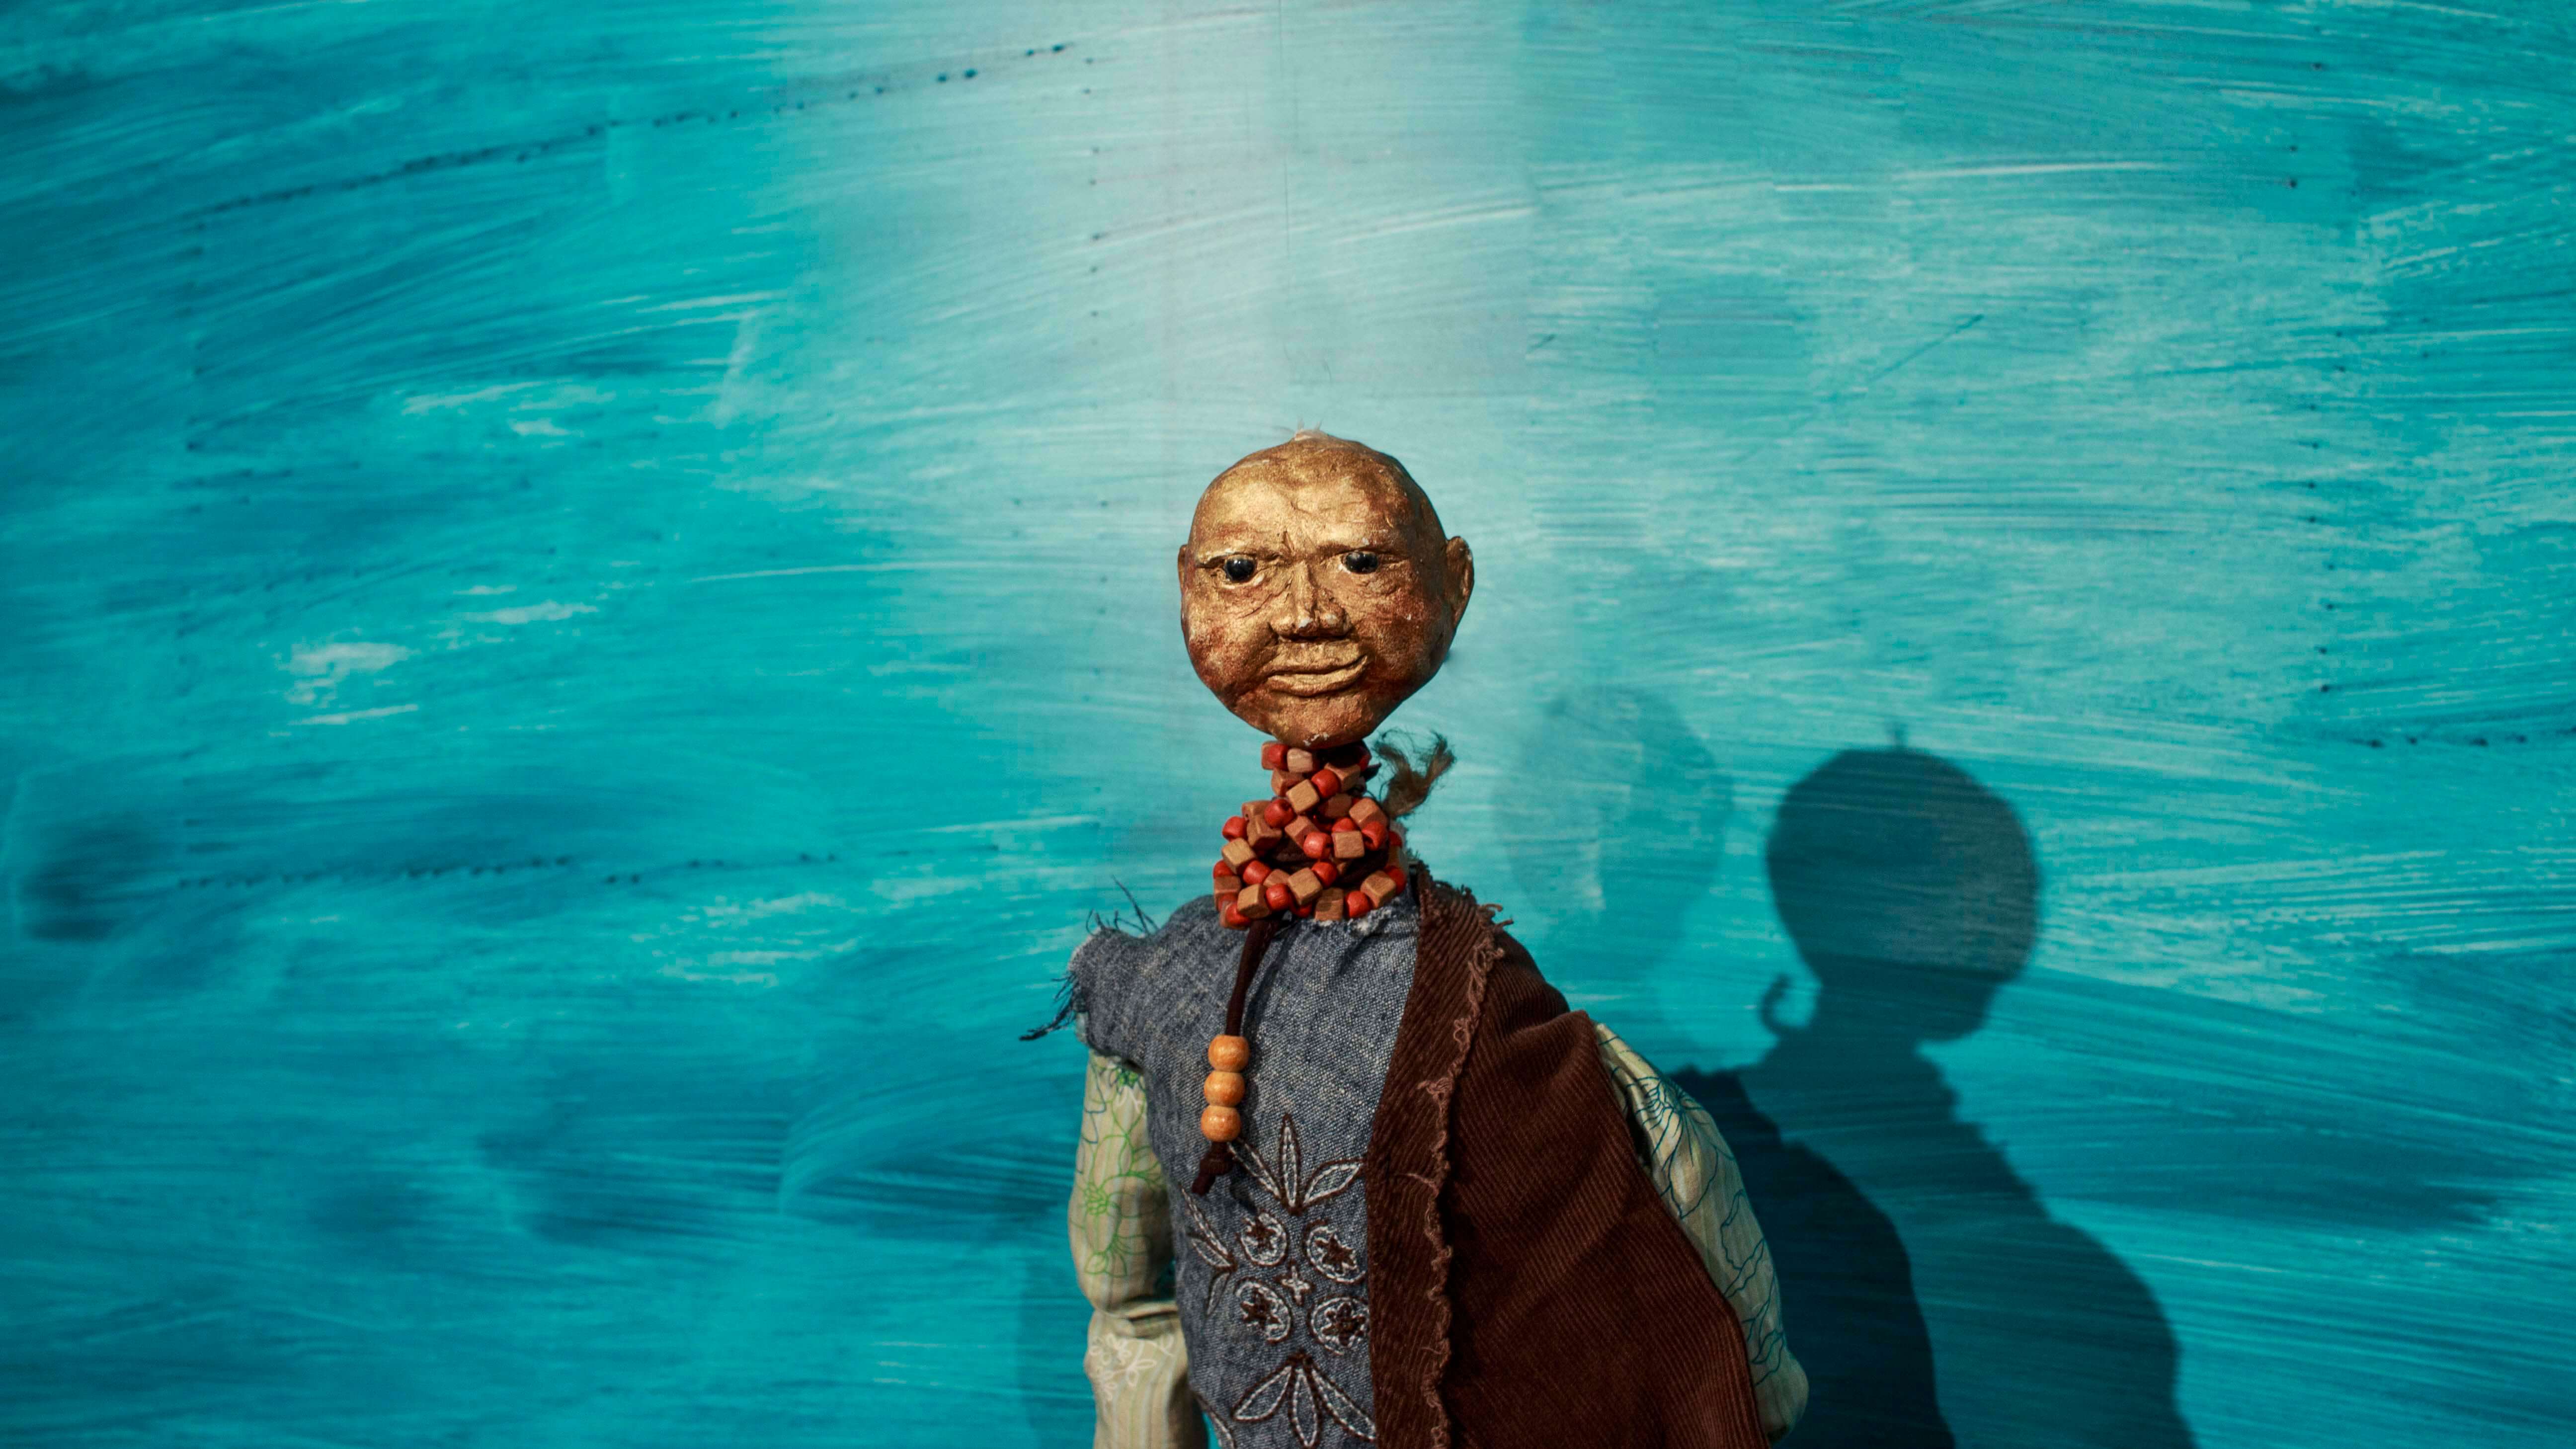 lalka, łysa, starsza postać ubrana w niebiesko szarą koszulę i brązowy przerzucony przez ramię materiał, na szyi ma korale, niebieskie tło